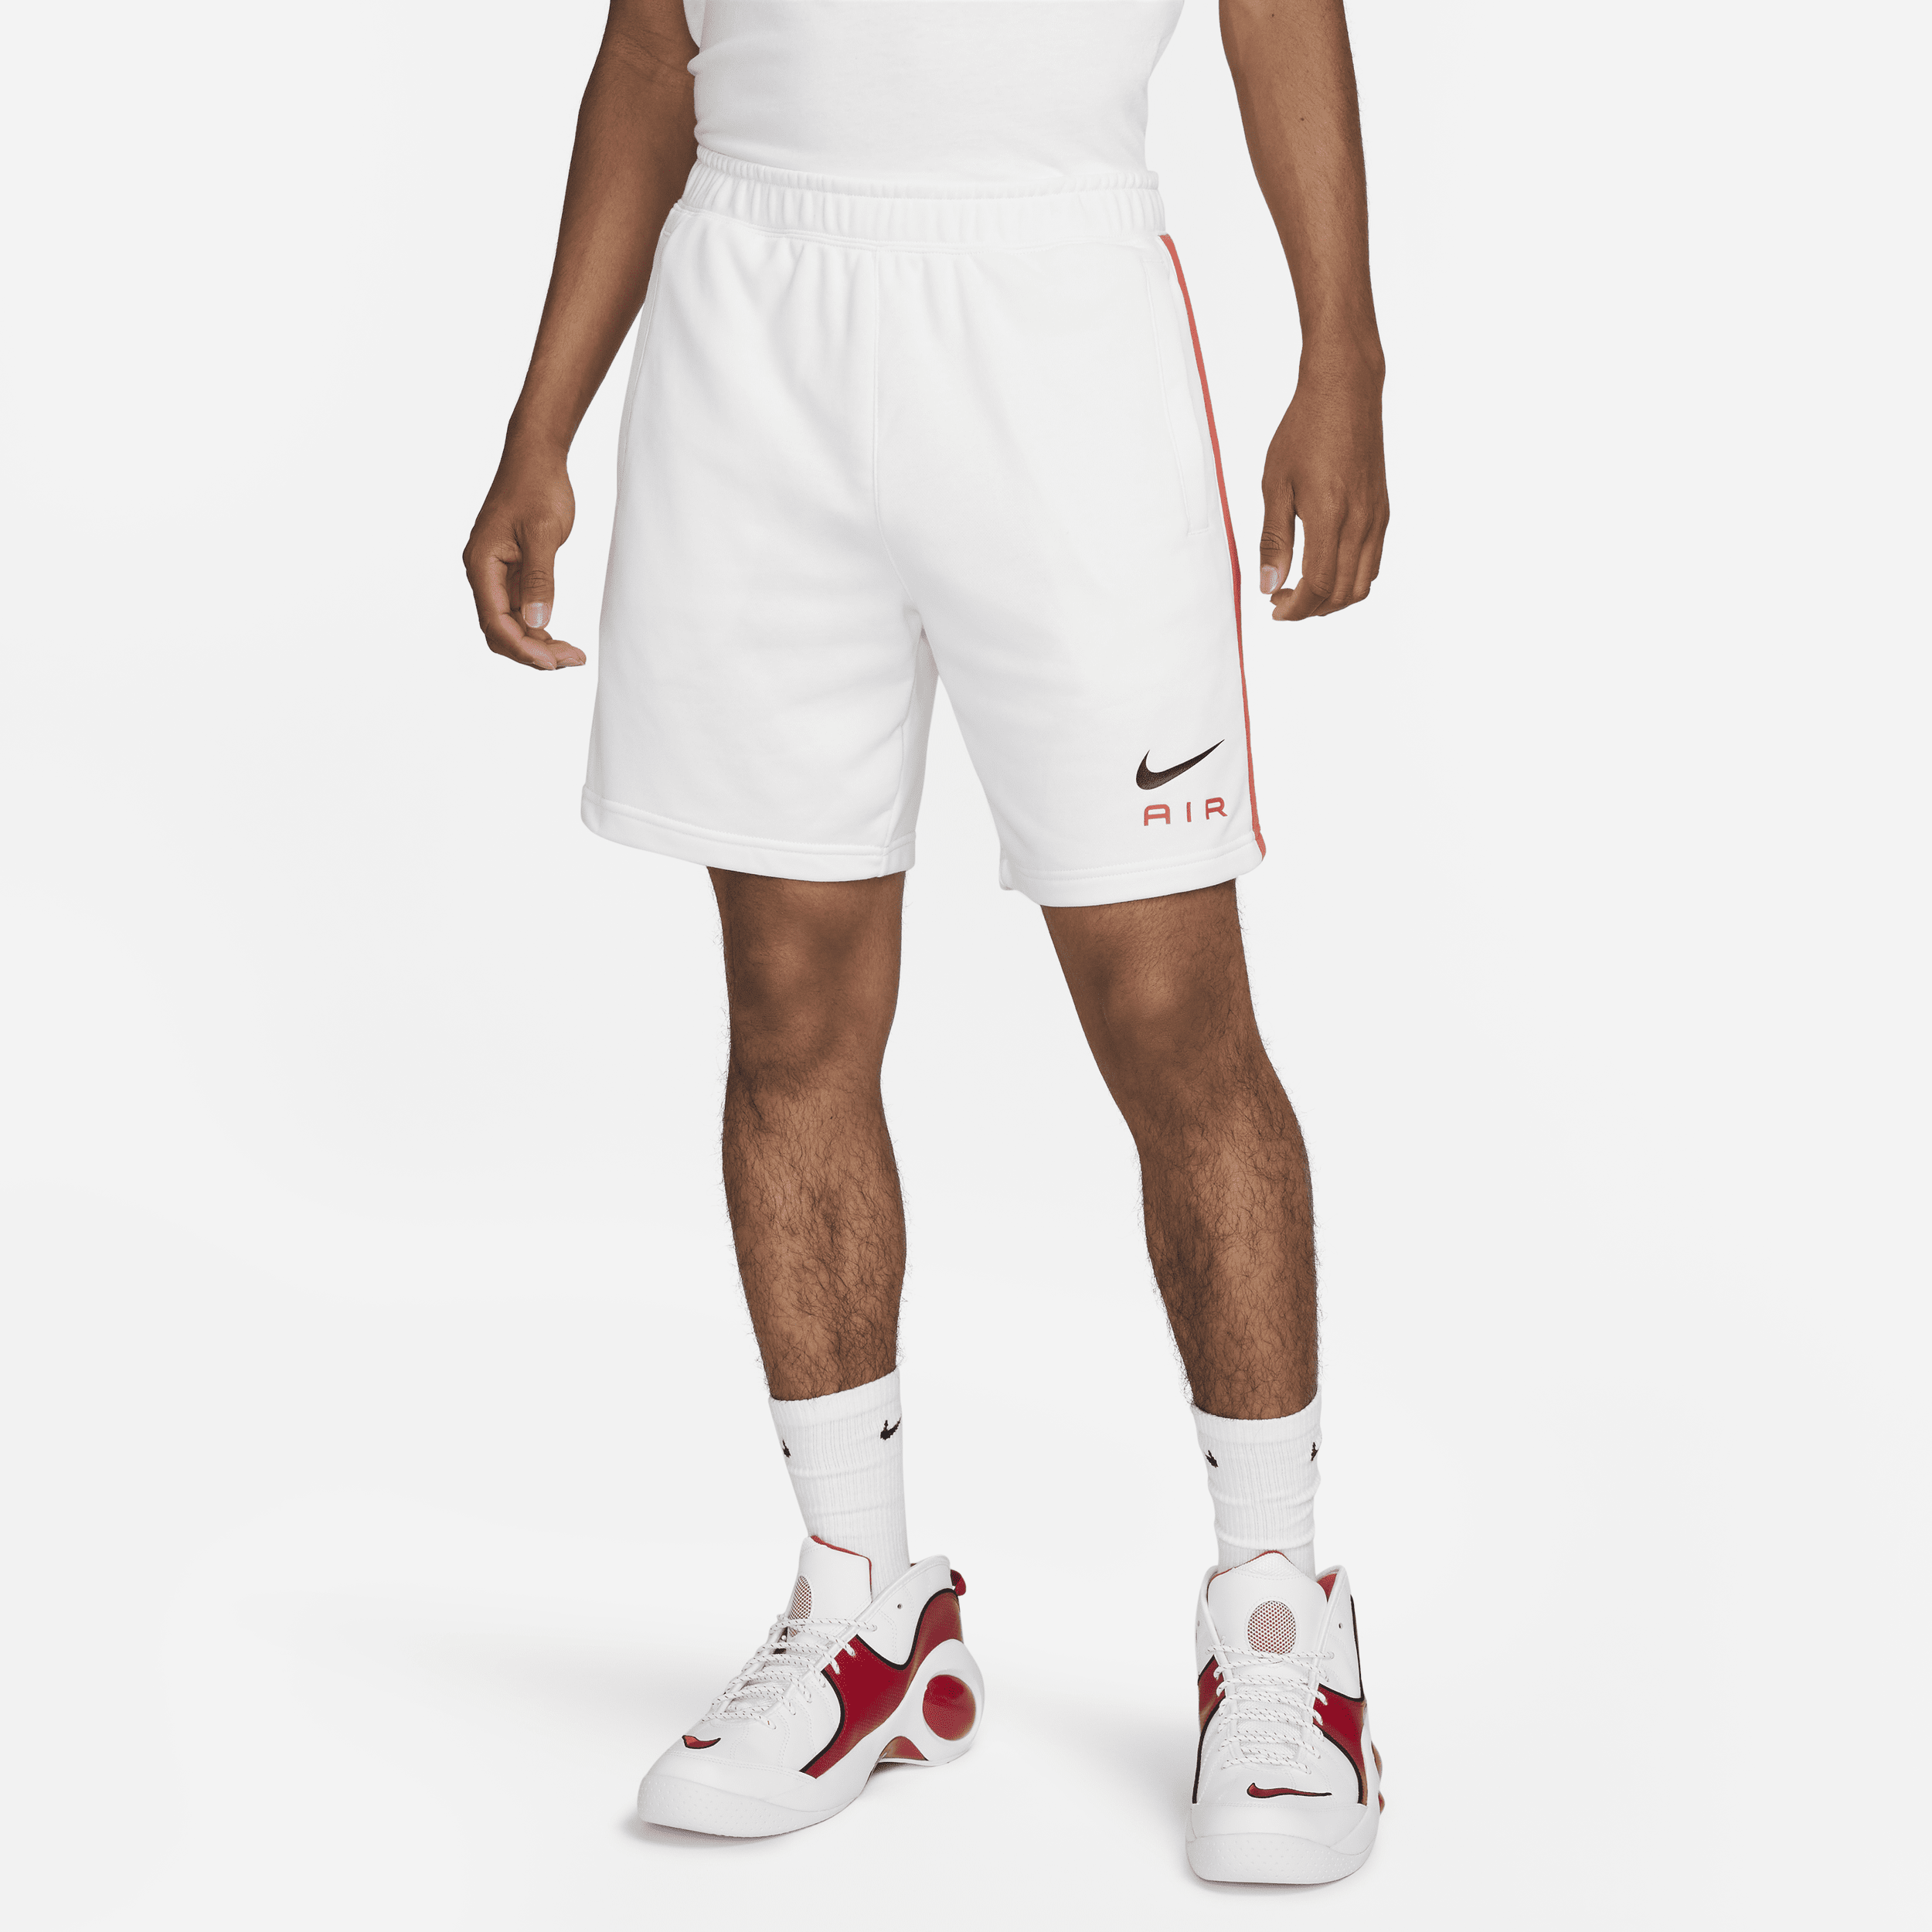 Nike Air-shorts i french terry til mænd - hvid